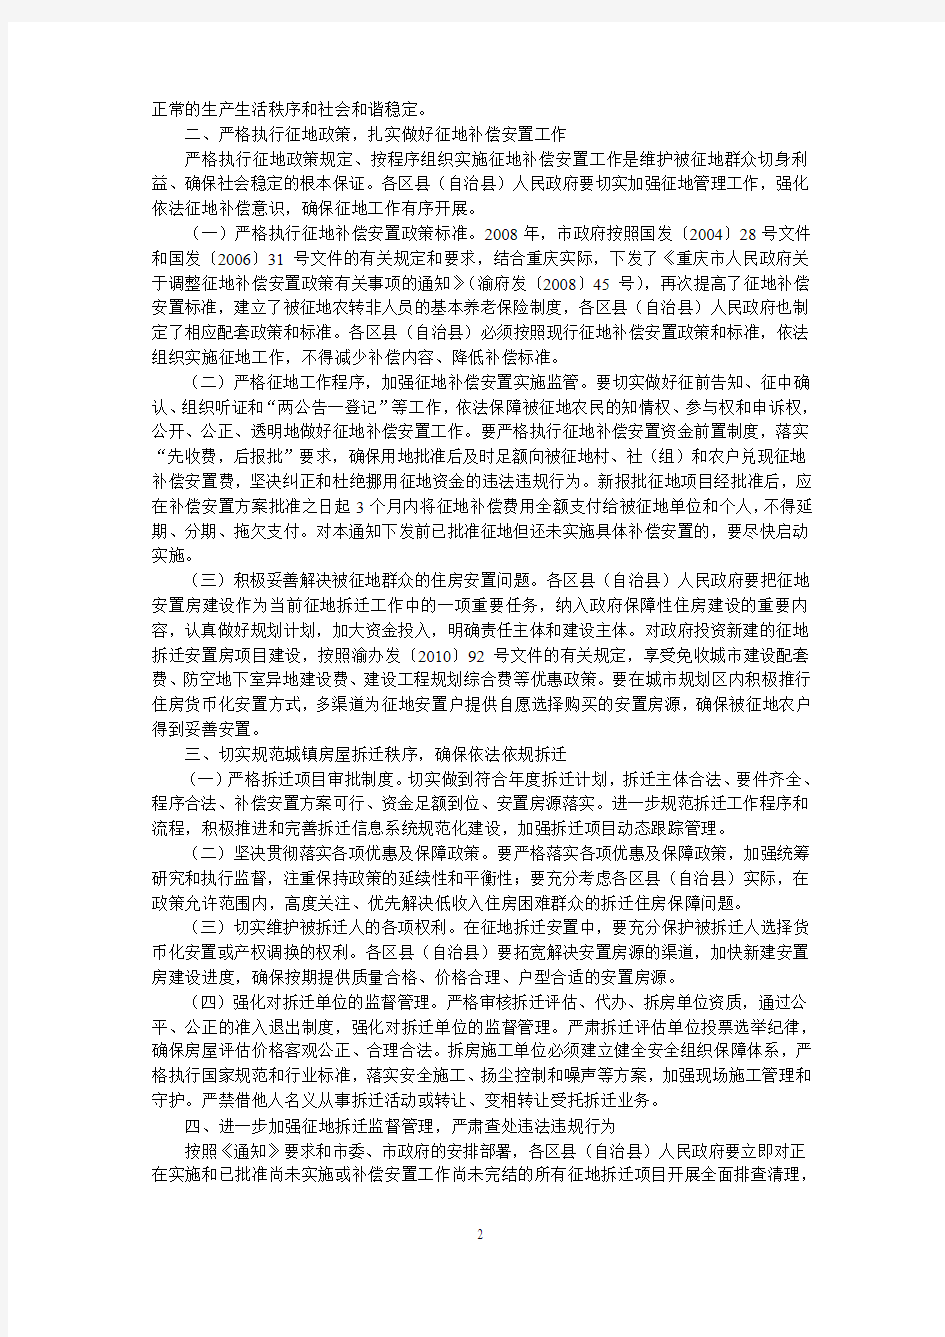 重庆市人民政府办公厅关于进一步严格农村征地和城镇房屋拆迁管理工作切实维护群众合法权益的紧急通知的